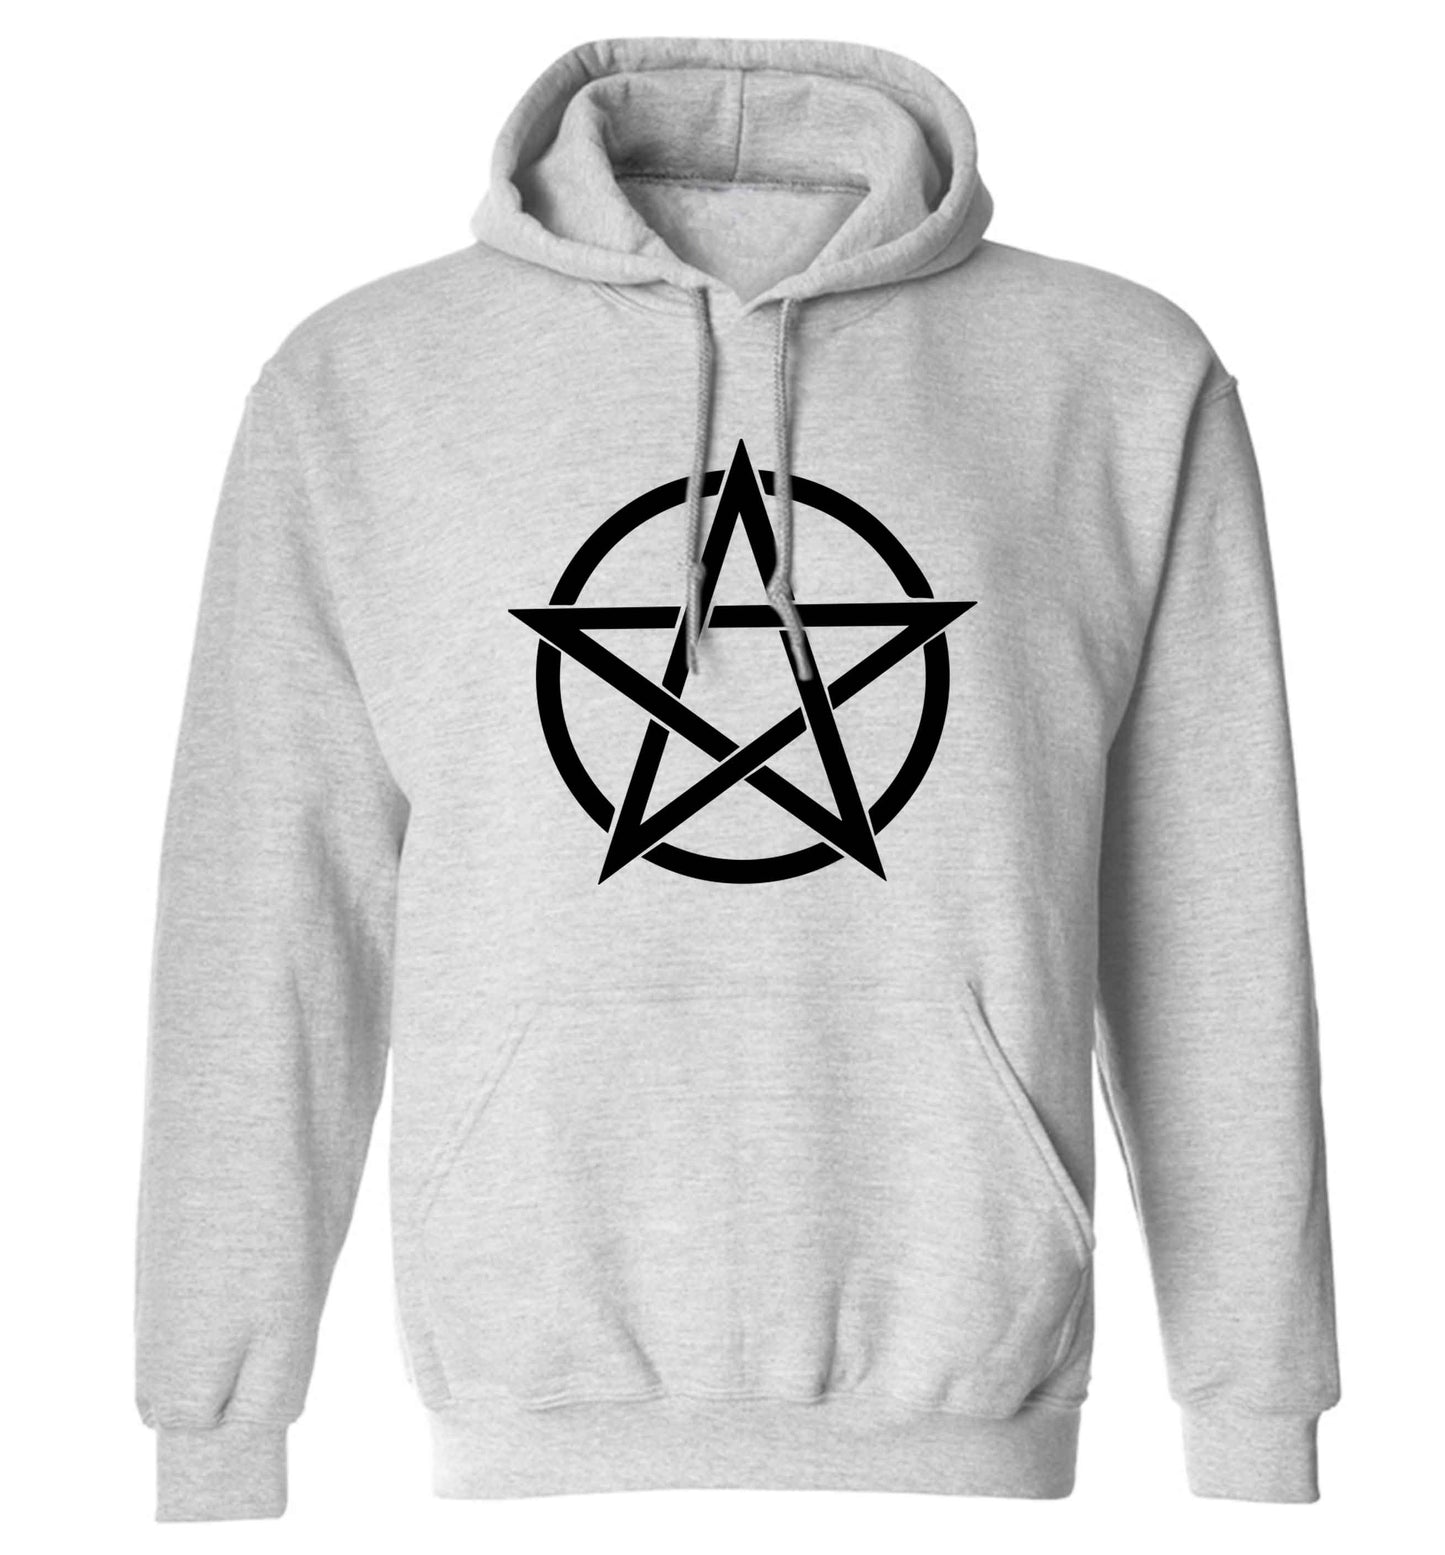 Pentagram symbol adults unisex grey hoodie 2XL